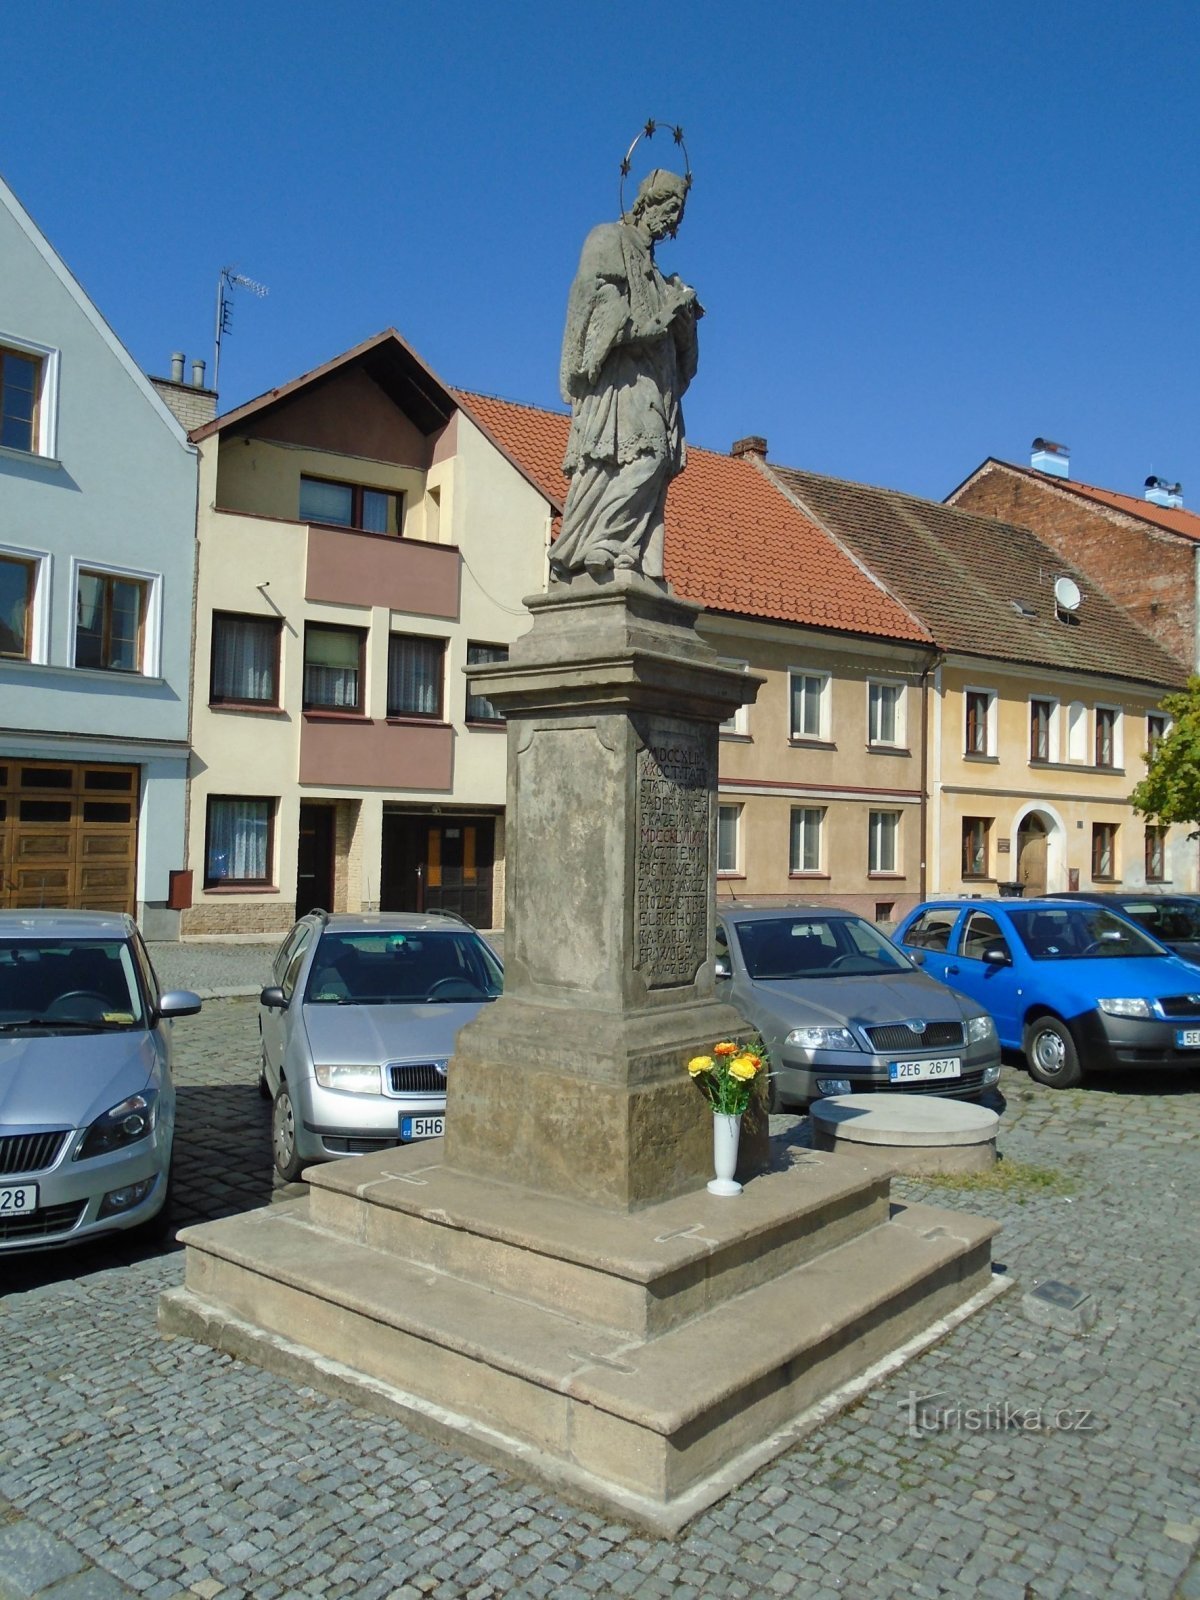 圣雕像Nepomuck 的约翰在 Bělobranské náměstí 上（Pardubice，18.4.2018 年 XNUMX 月 XNUMX 日）